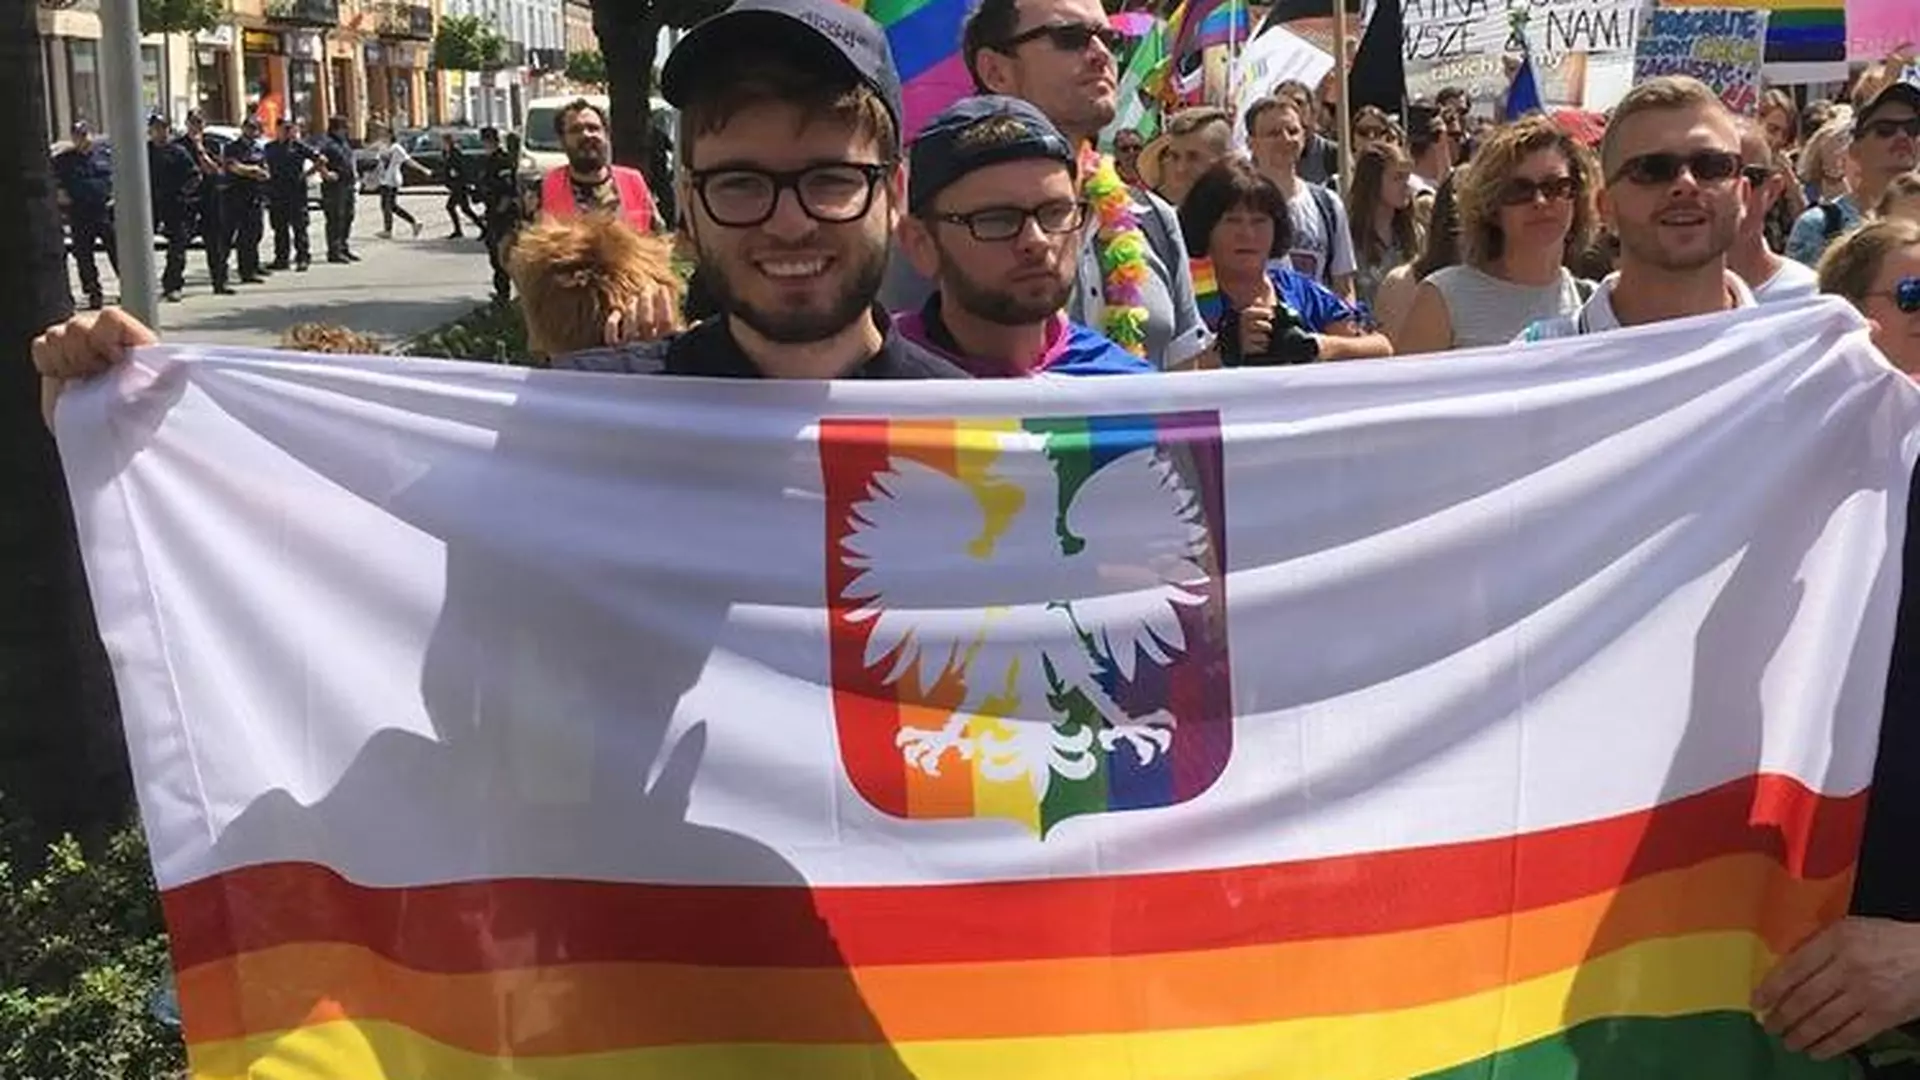 "Tęczowy orzeł nikogo nie obraża". Środowisko LGBT chce mieć prawo do symboli narodowych